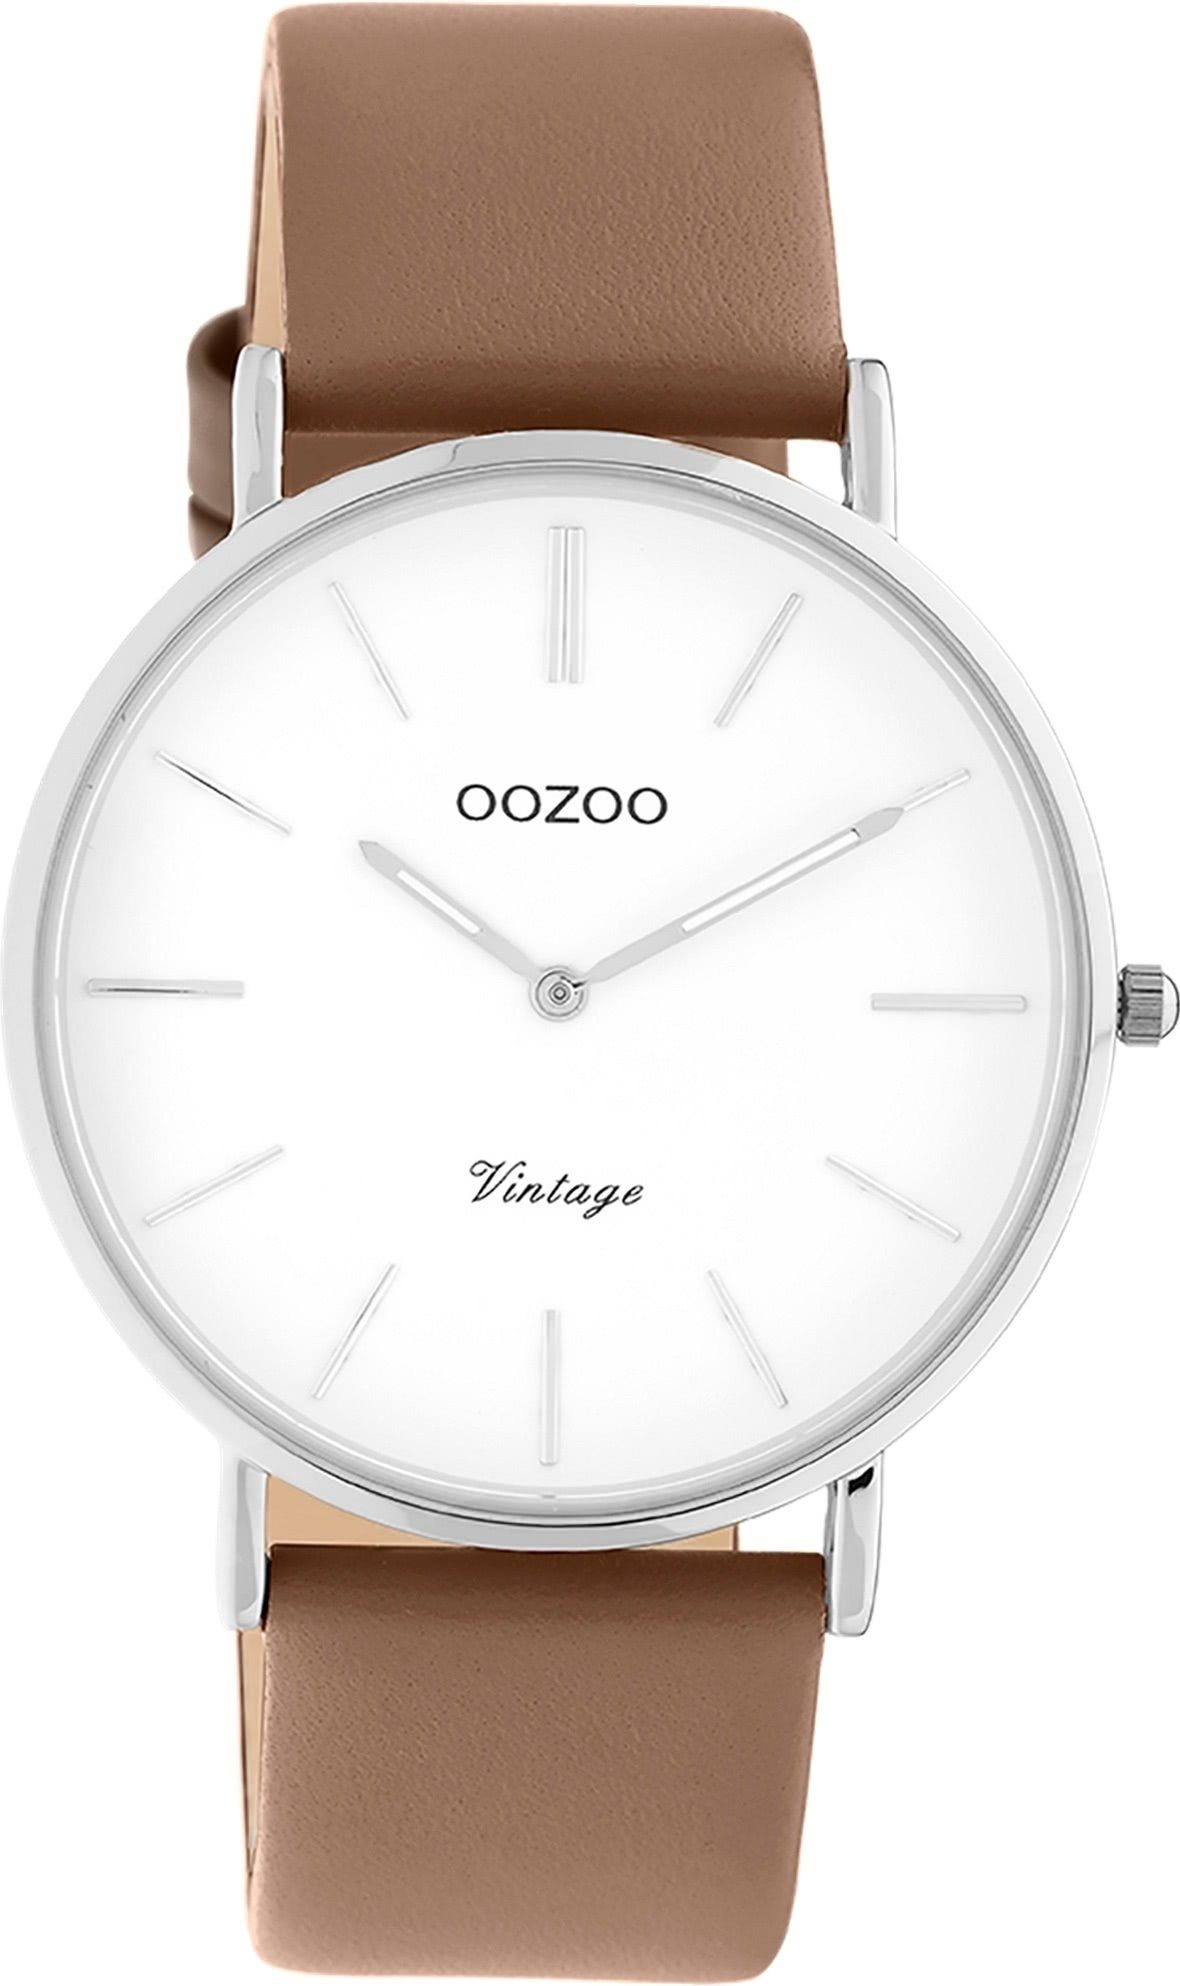 OOZOO Vintage online | Damenuhren OTTO kaufen